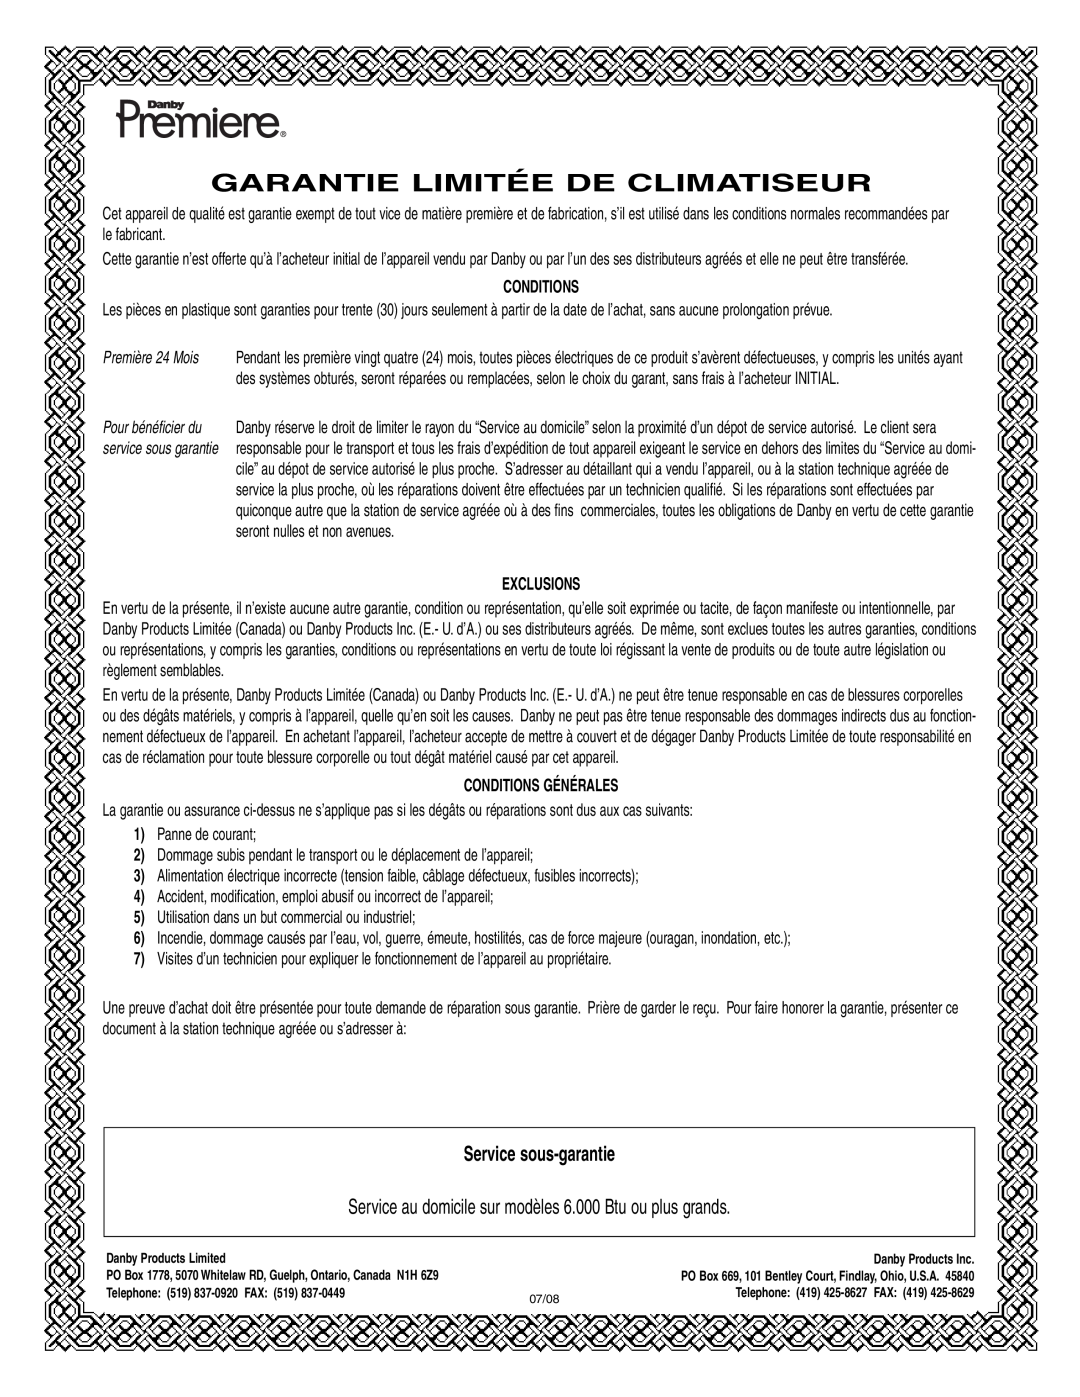 Danby DPAC 9009 manual Service sous-garantie, Garantie Limitée De Climatiseur, Exclusions, Conditions Générales 